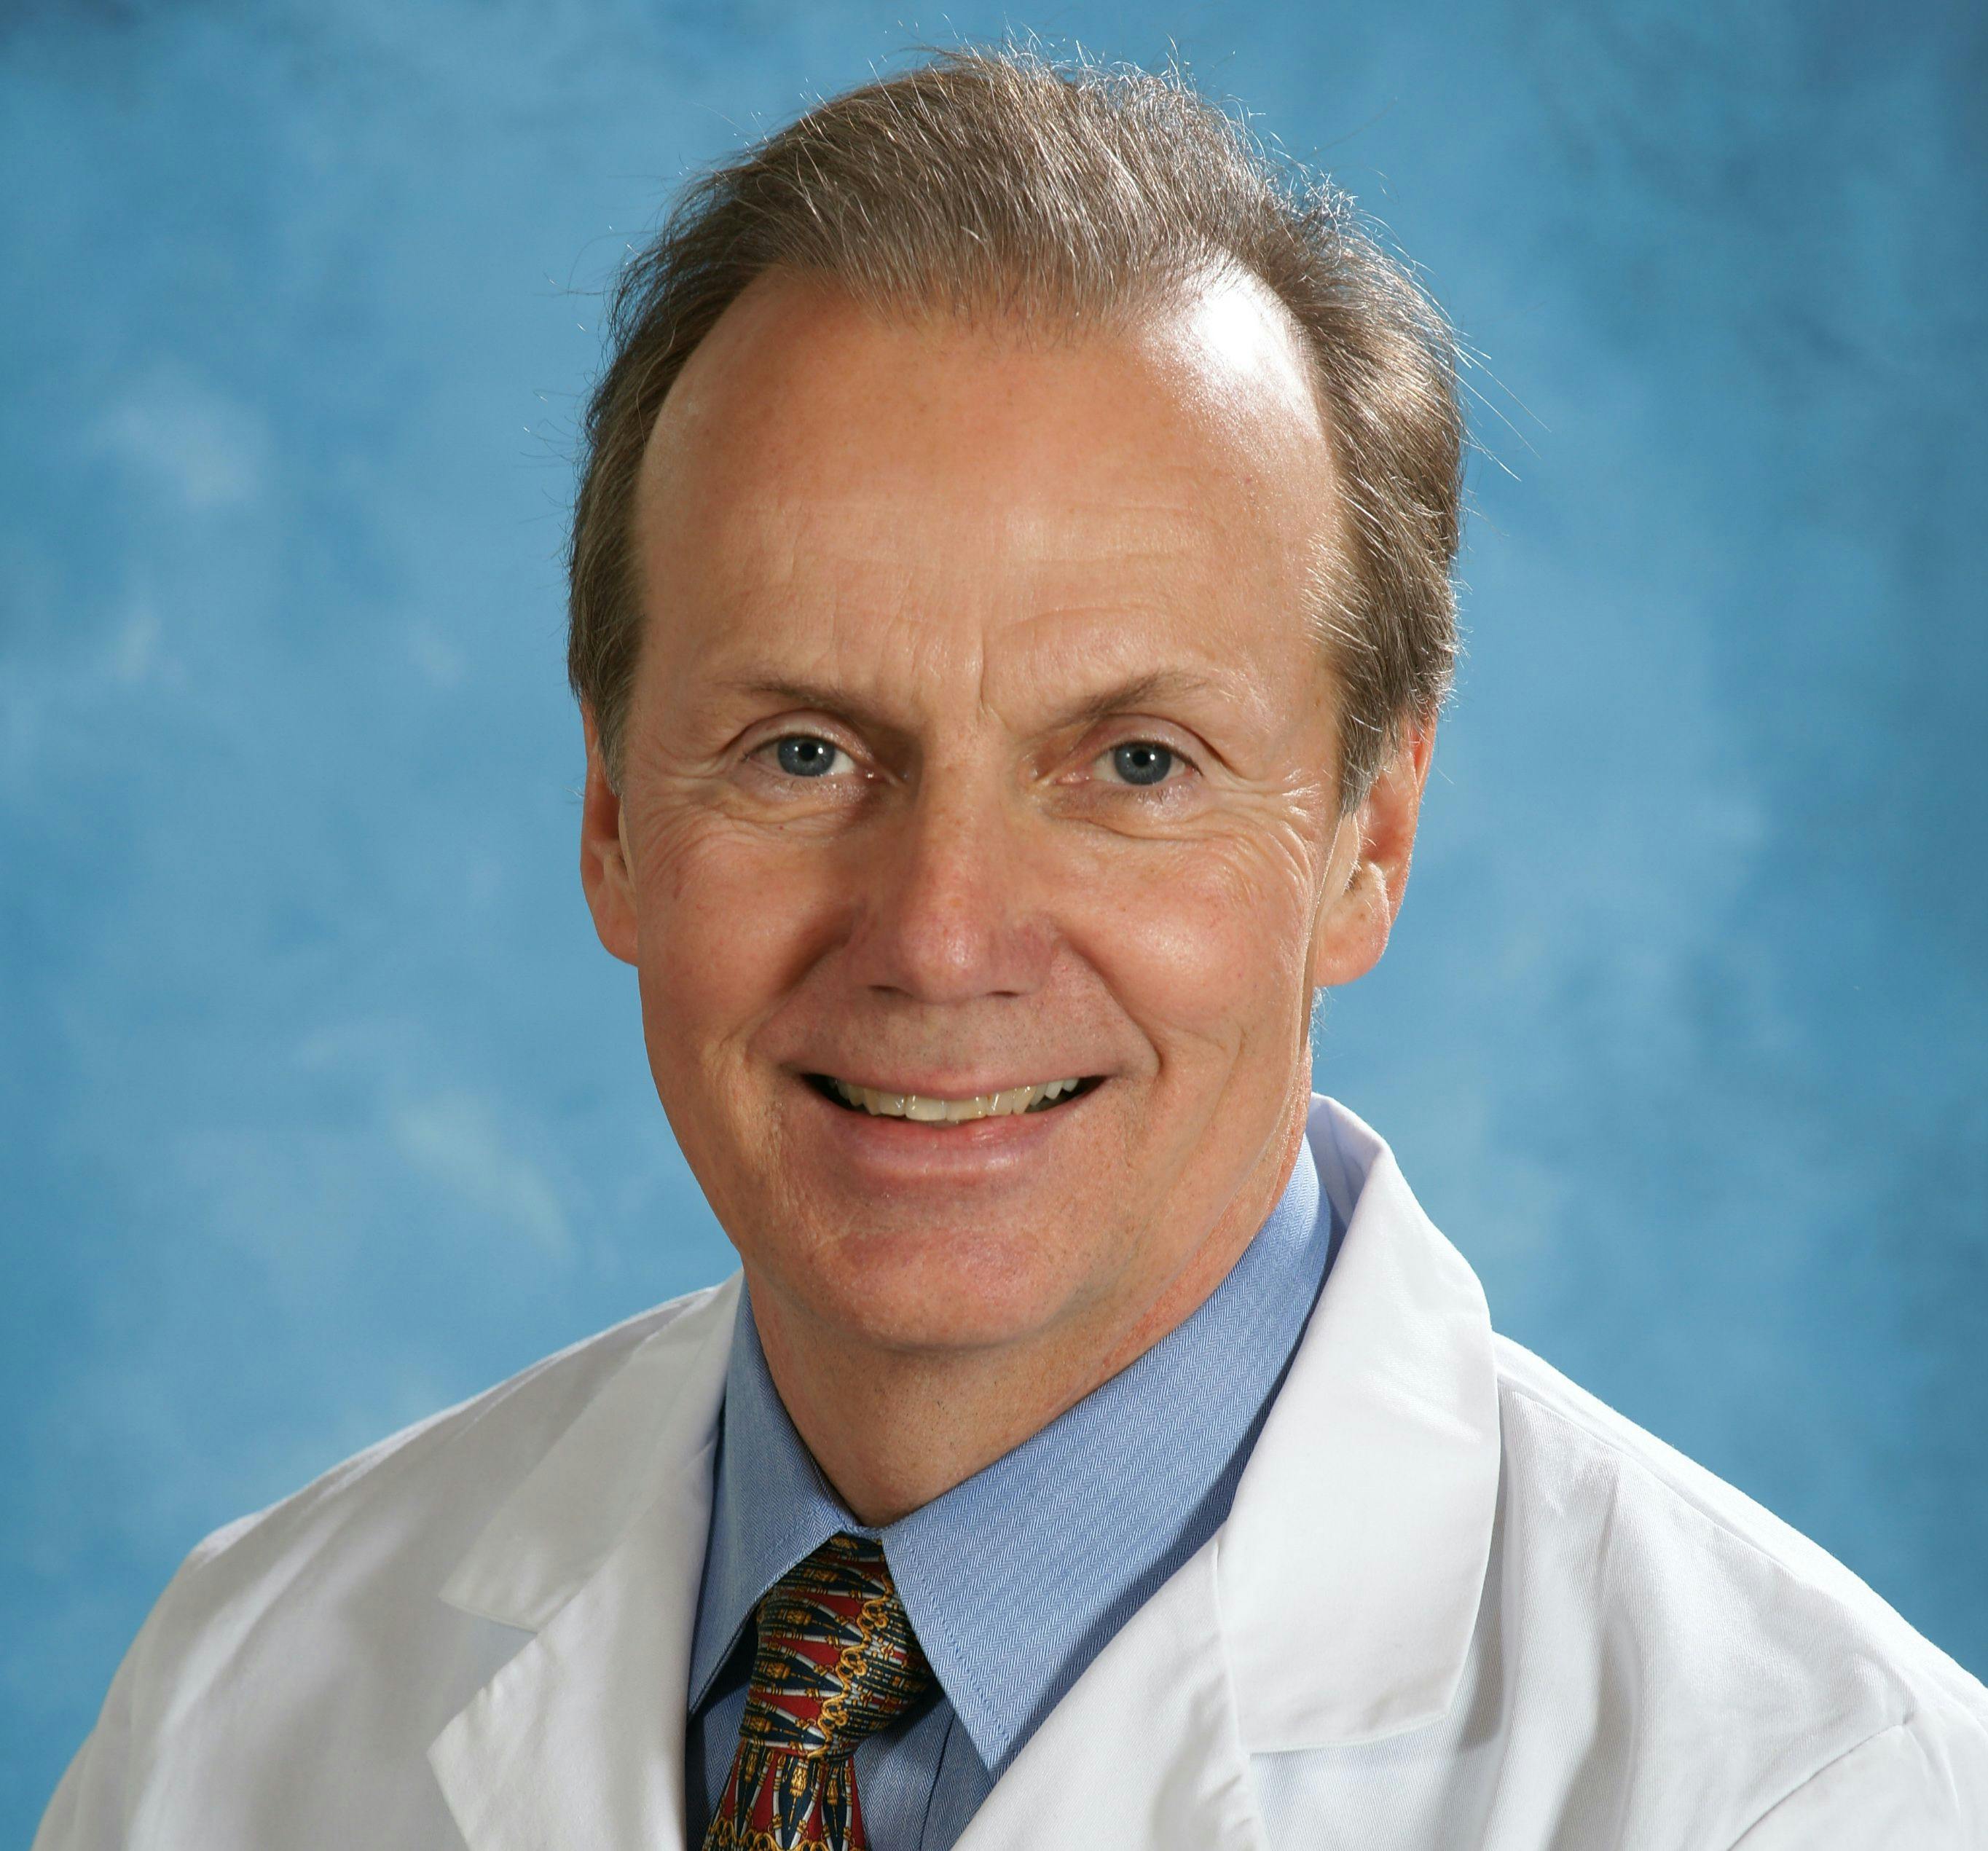 Joseph E. Scherger, MD, MPH